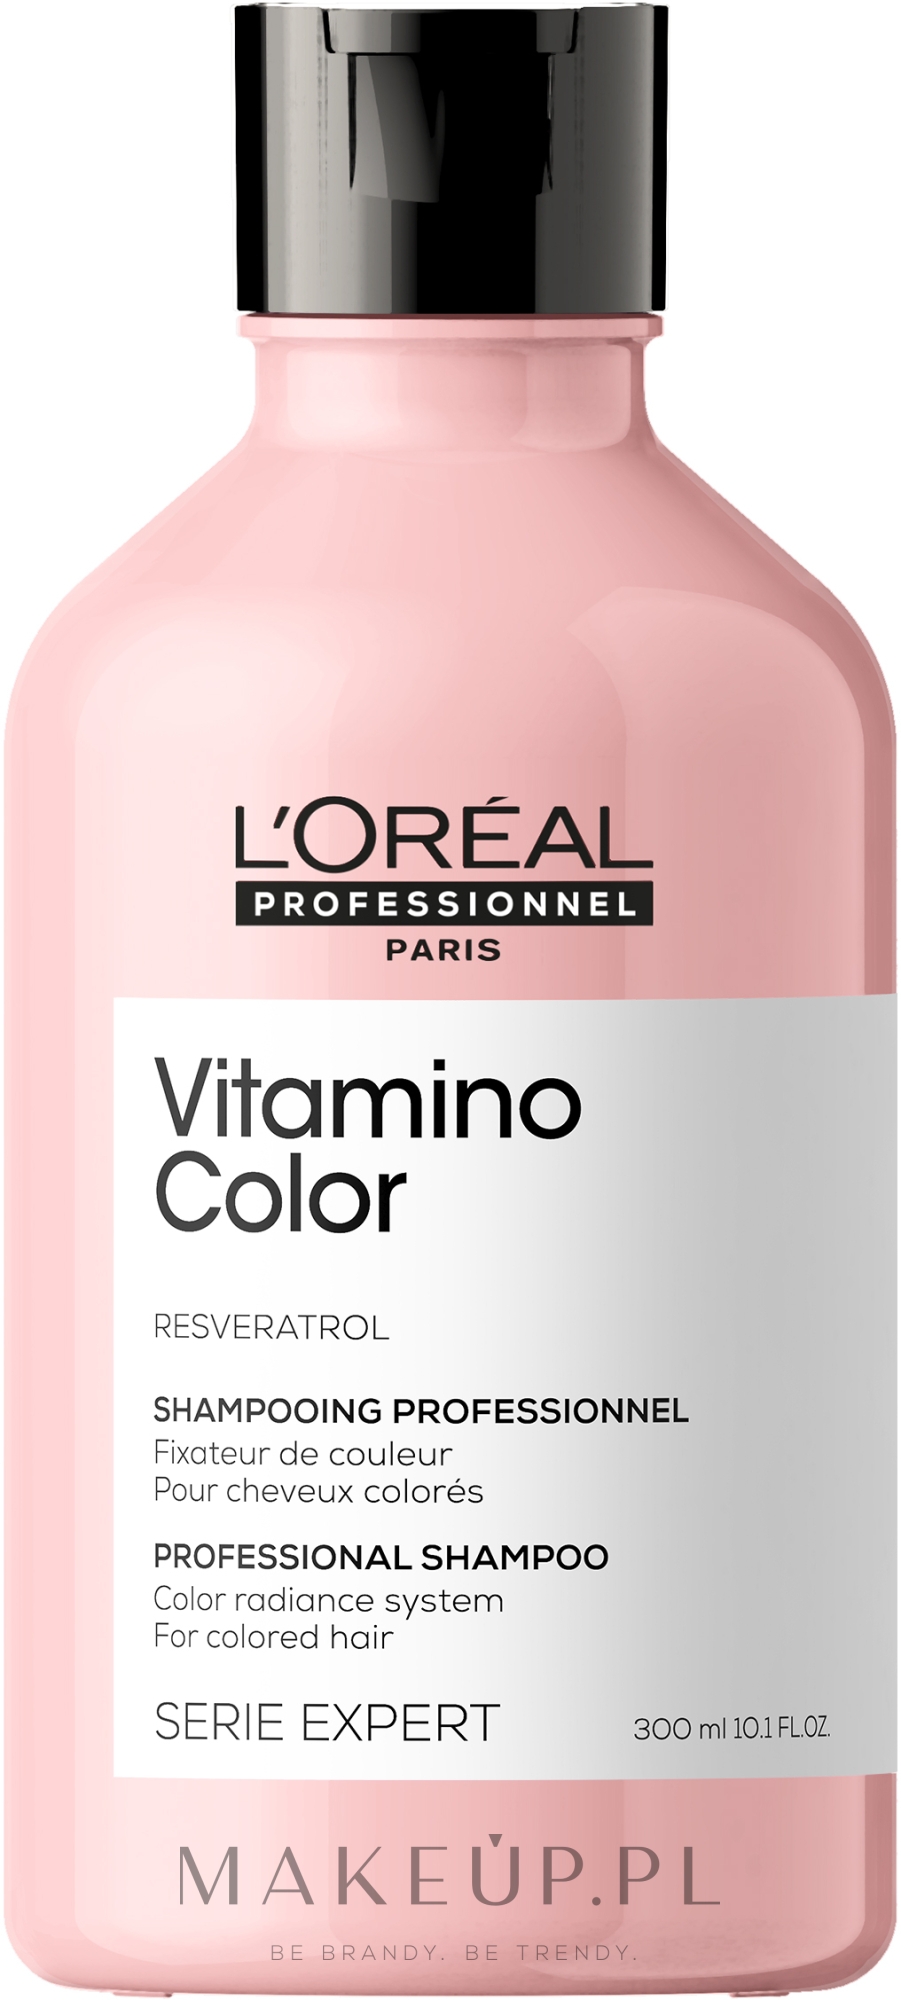 pompka do profesjonalnych szampon loreal 1500 ml